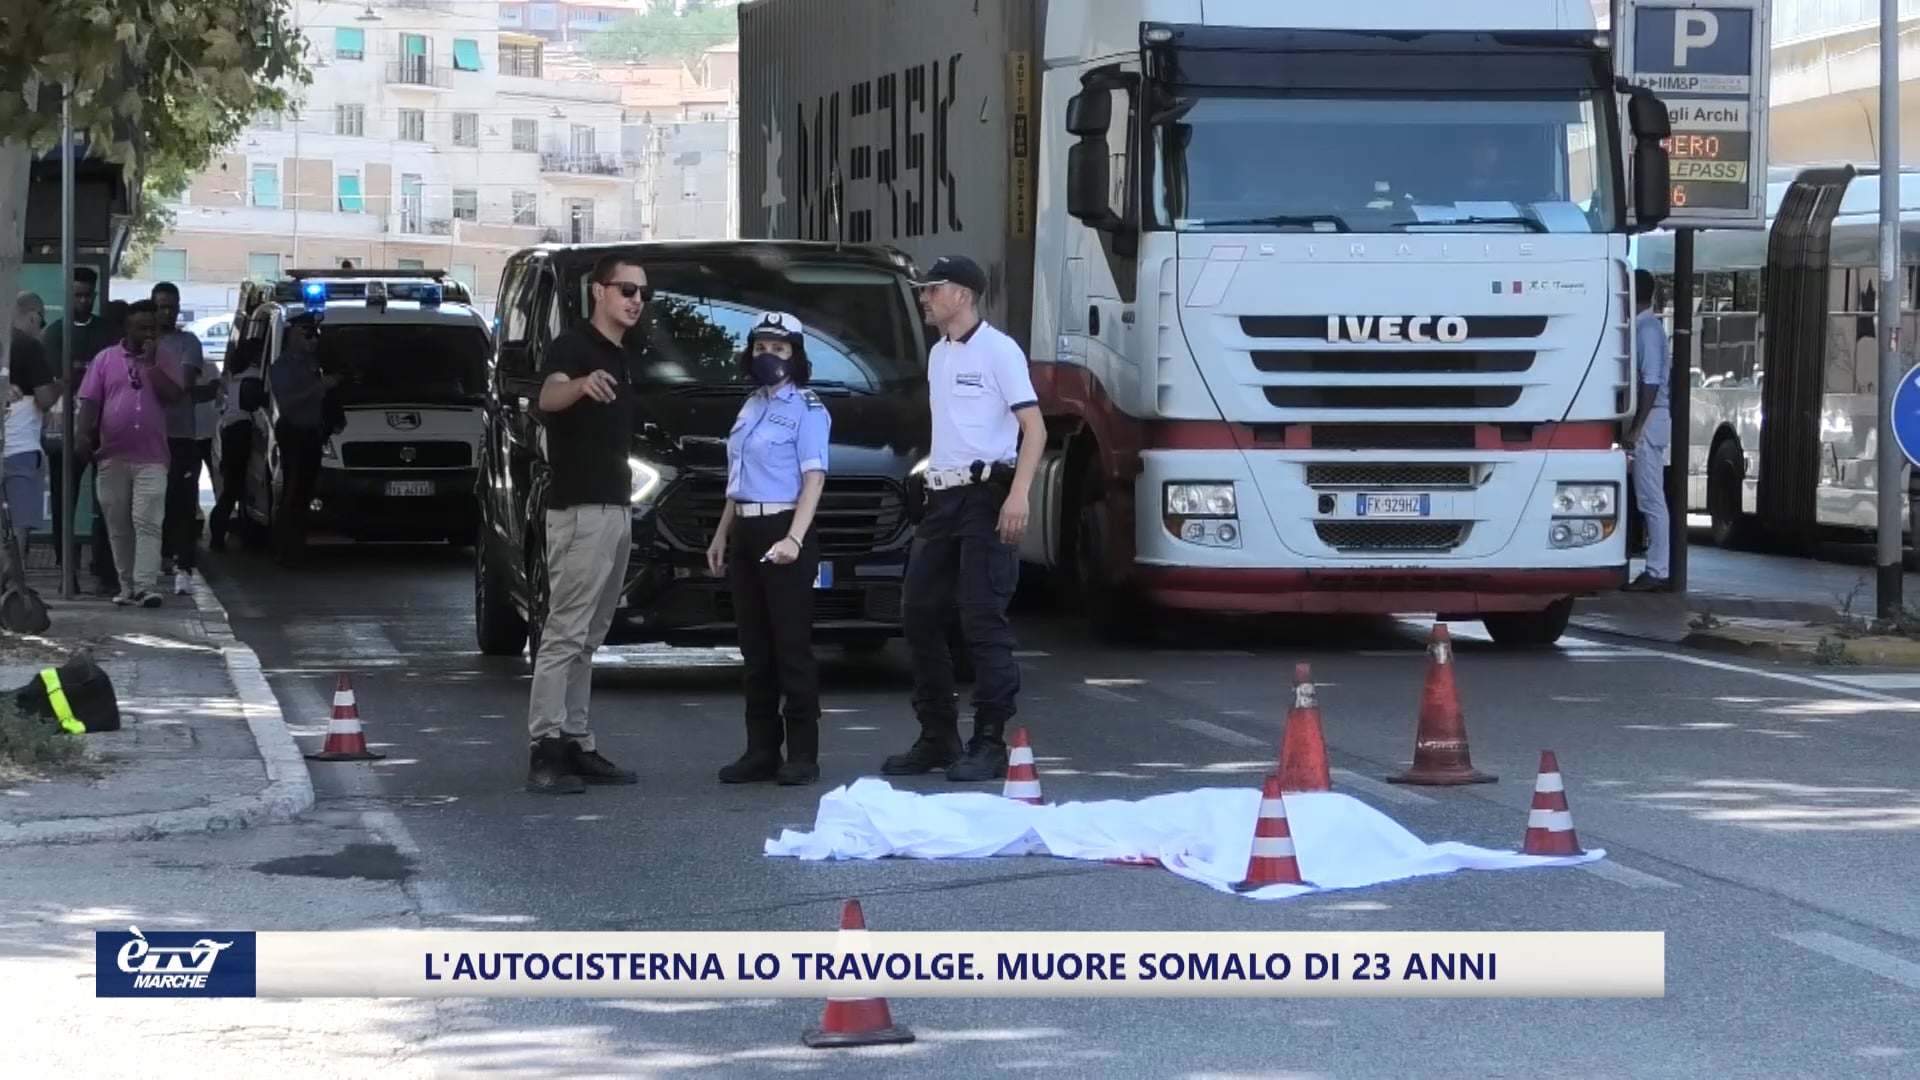 Ancona. L'autocisterna lo travolge. Muore un ragazzo somalo di 23 anni - VIDEO